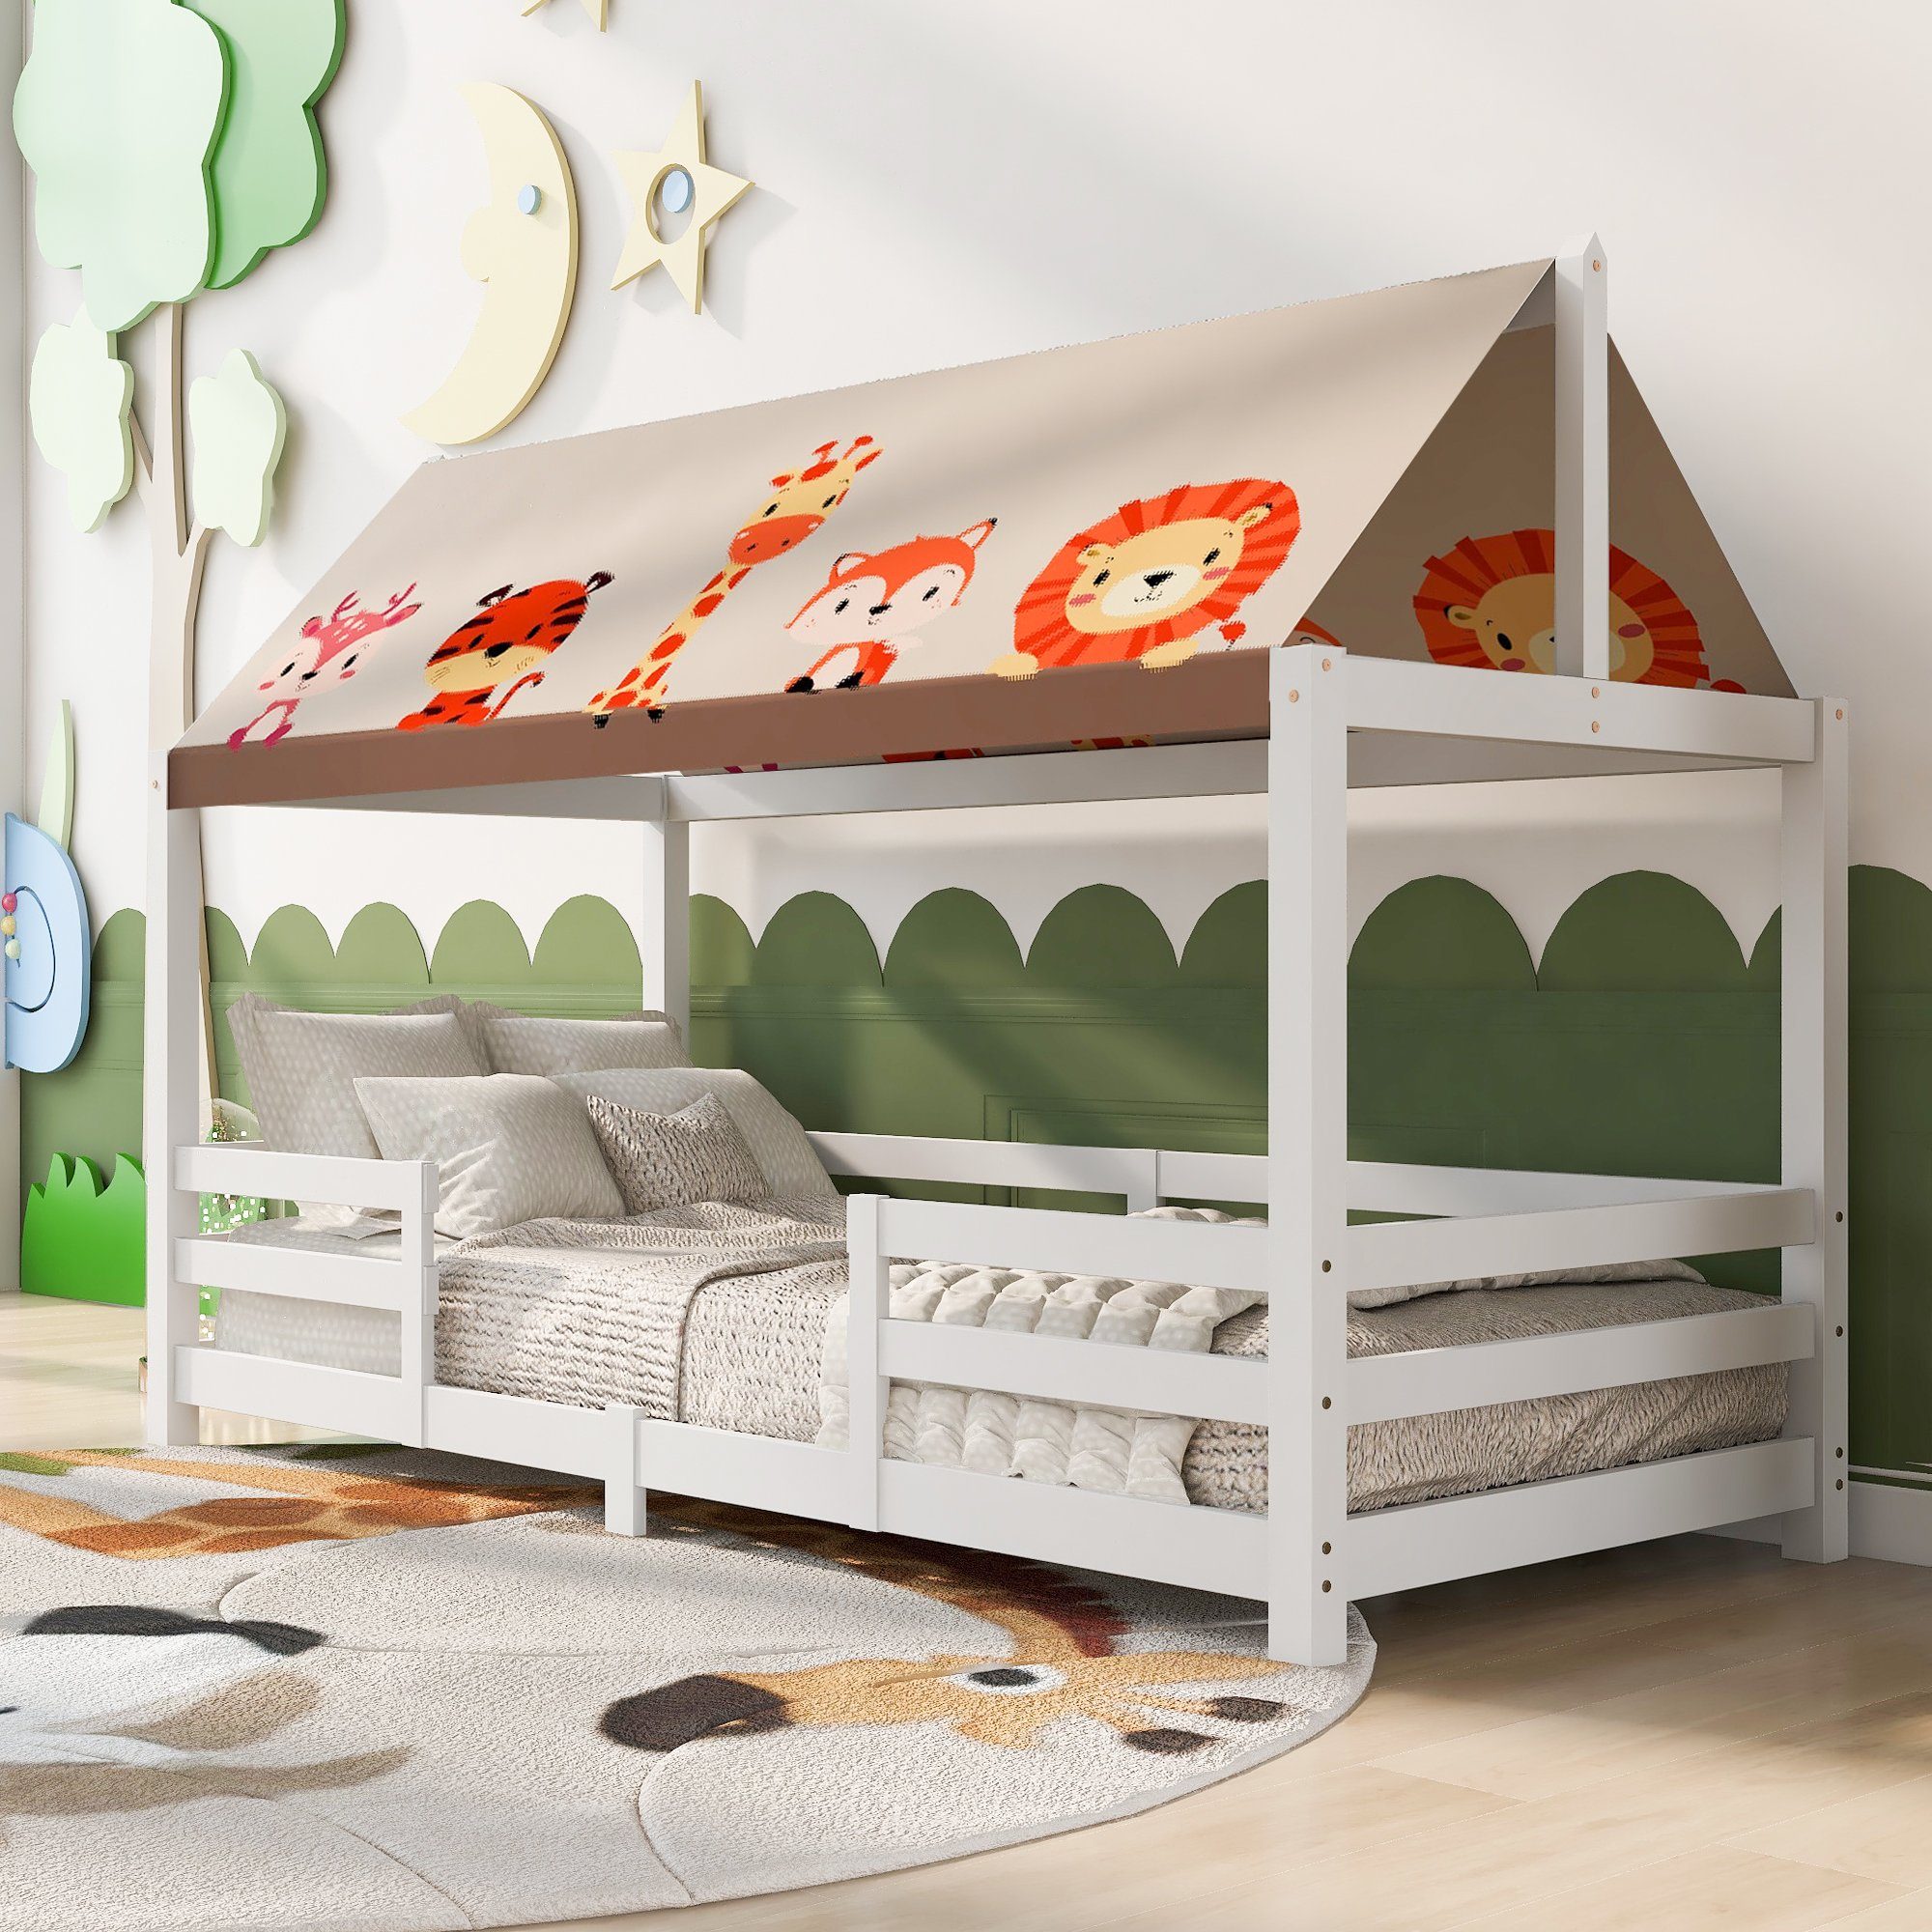 Flieks Kinderbett, Hausbett mit Leinen Tierbild Zeltdach 90x200cm Weiß